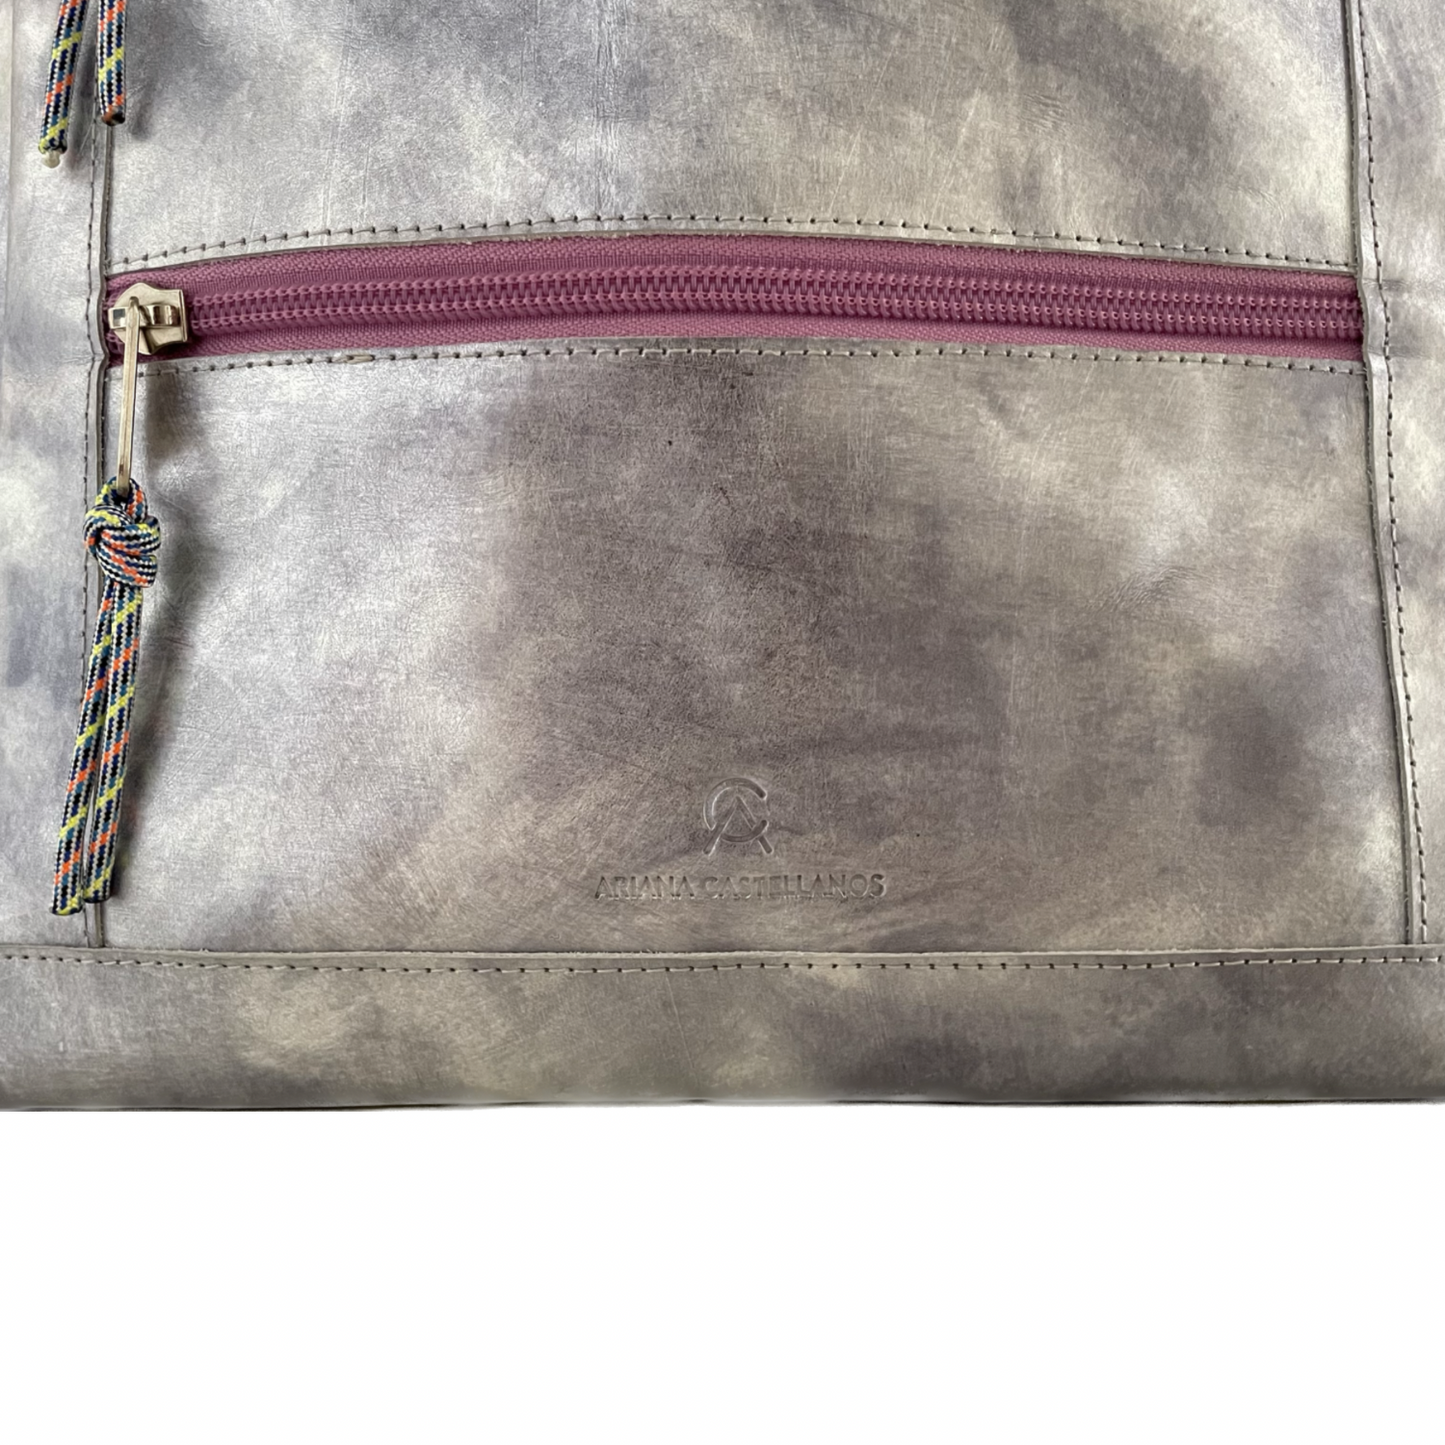 Barbarella Silver Repurposed Leather Tote Backpack Laptop Bag